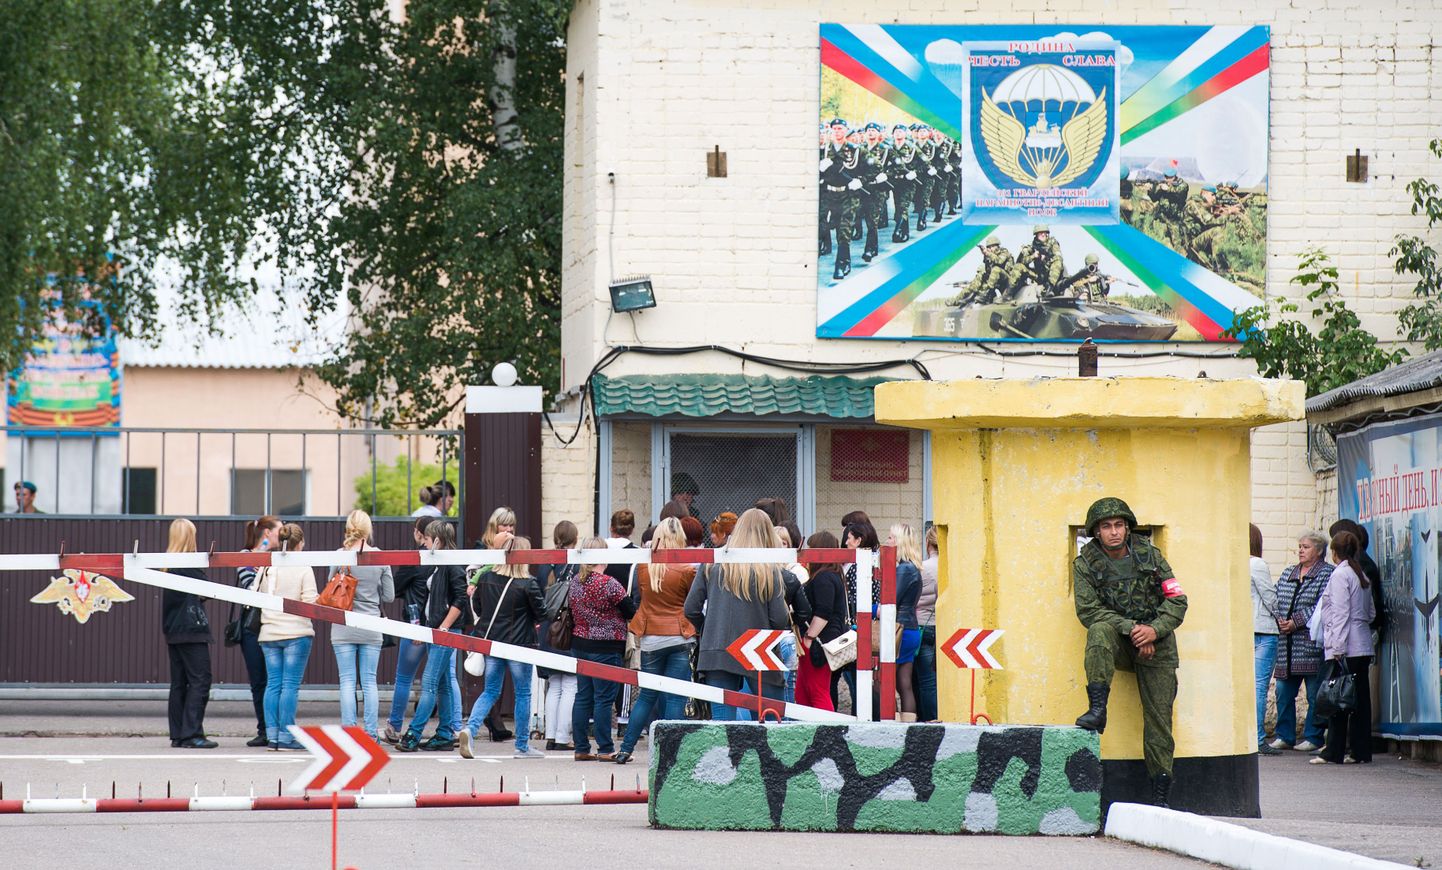 Vene dessantväelaste naised kogunesid Moskvast 350 kilomeetrit põhja pool asuvas Kostroma linnas sõjaväebaasi väravate taha nõudma selgitust oma lähedaste saatuse kohta.